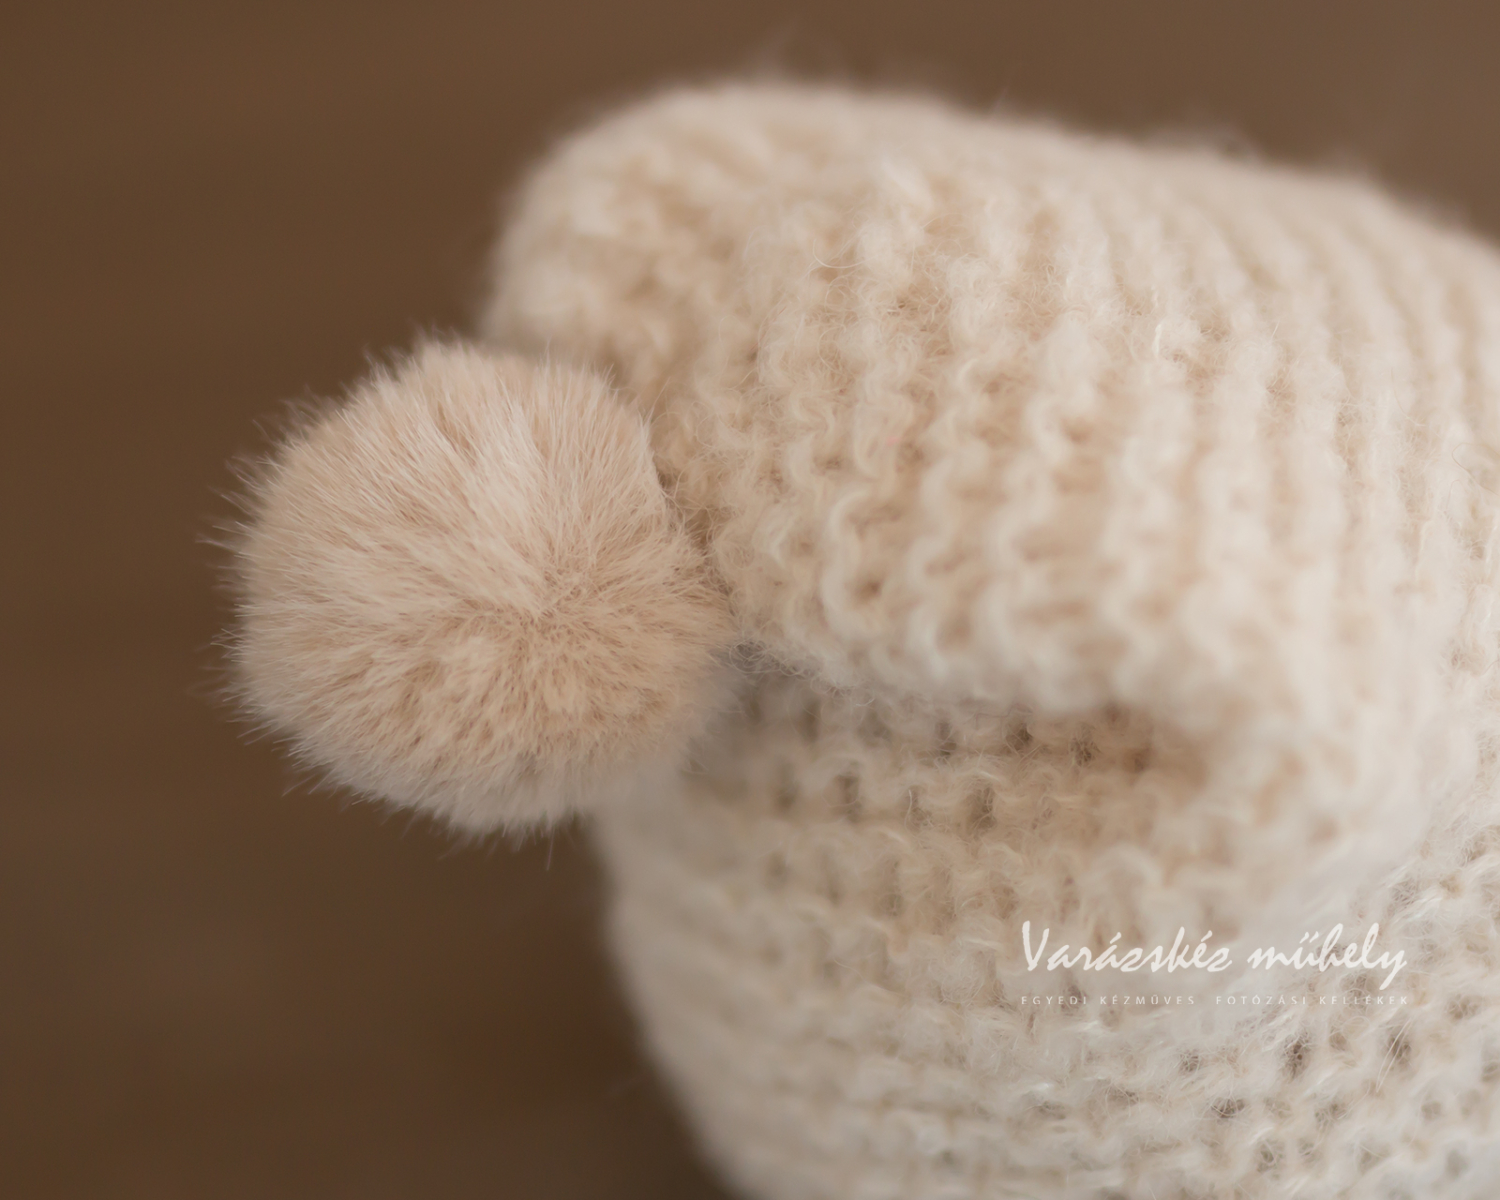 Of White Newborn Slouchy Hat with Fur Pom Pom